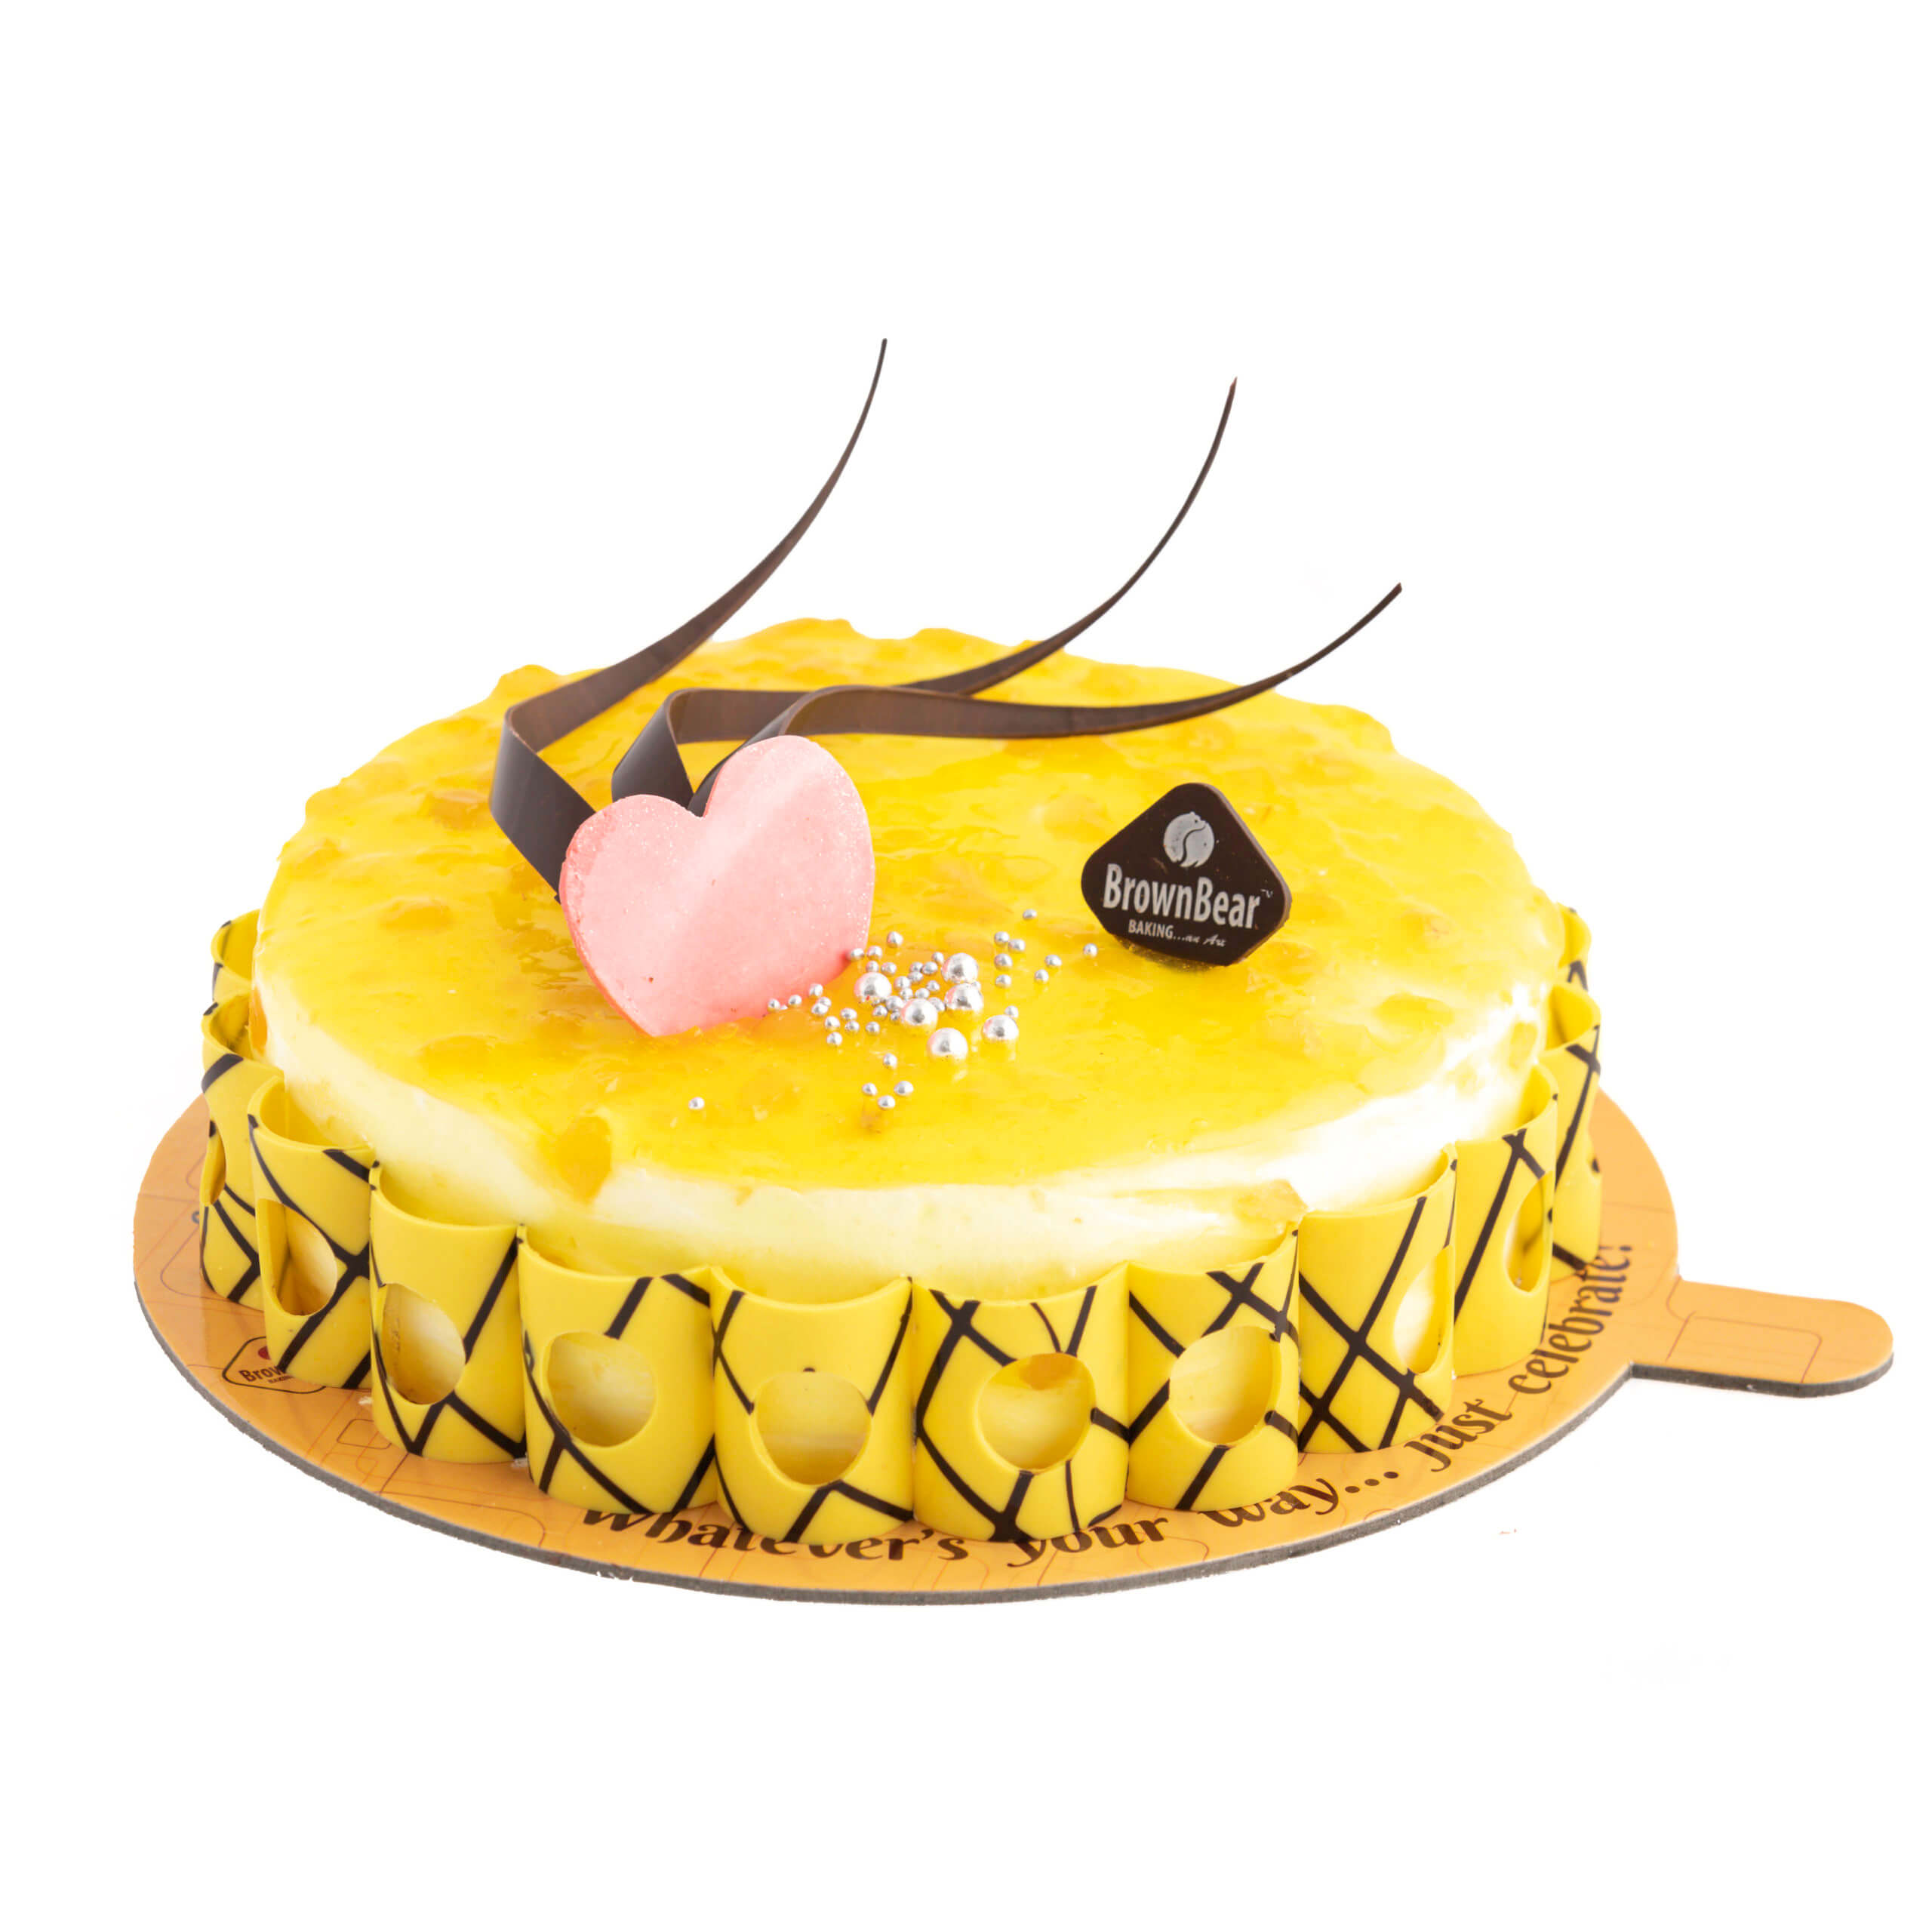 Share 141+ pineapple cake 500 gms super hot - in.eteachers